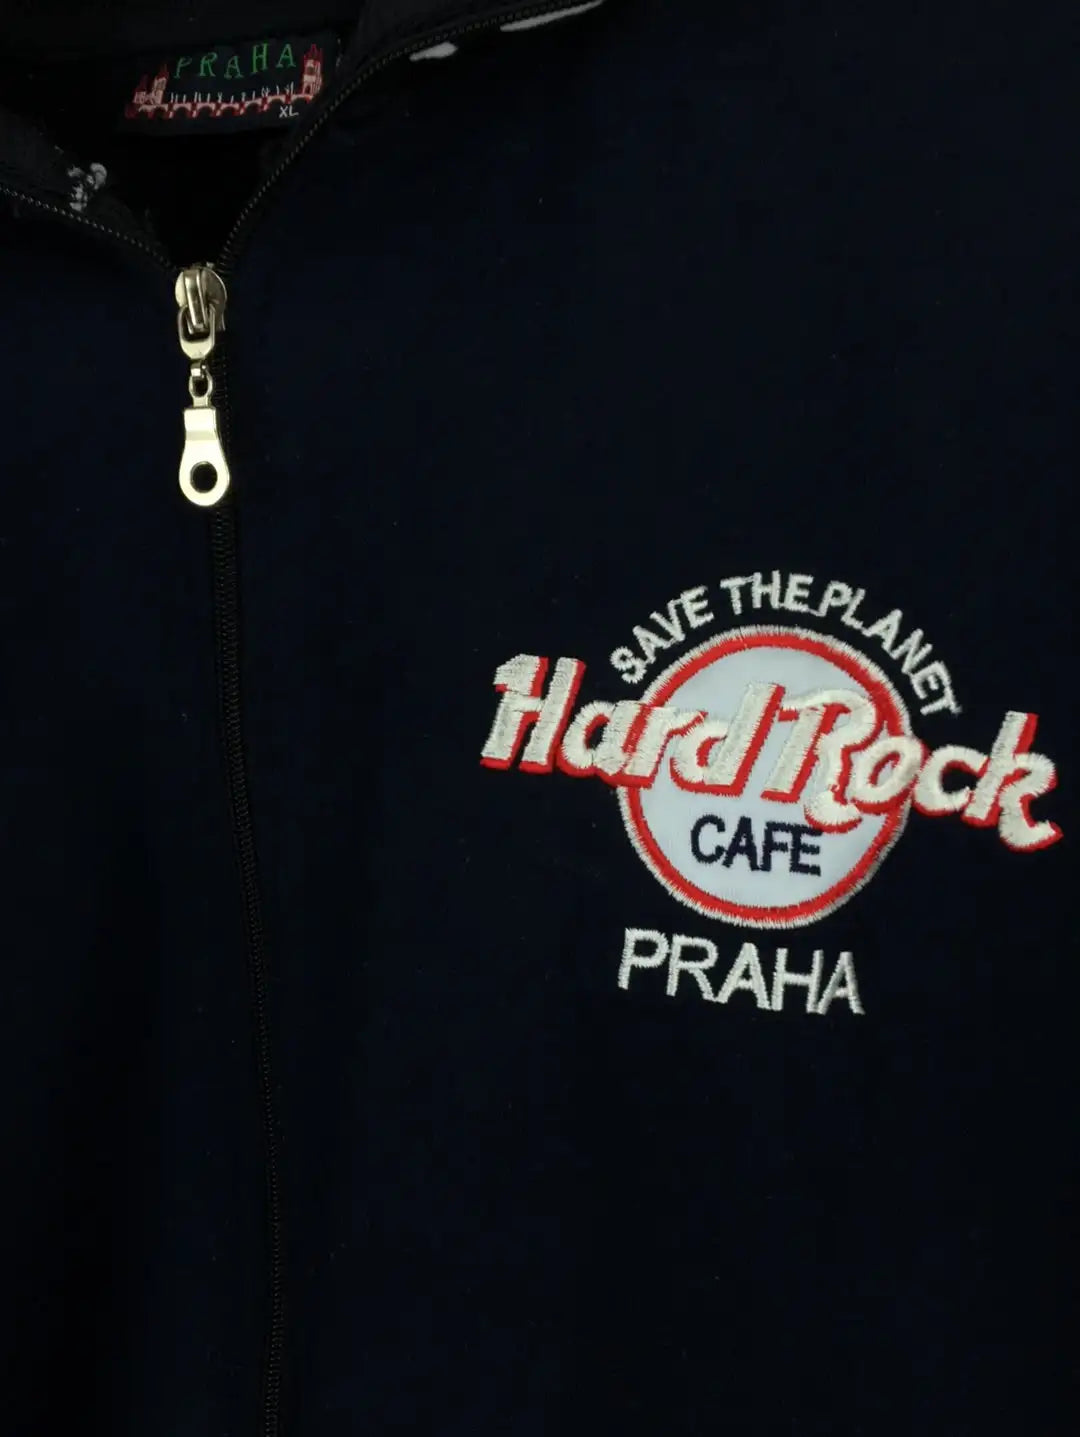 Hard Rock Cafe Track Jacket (L)